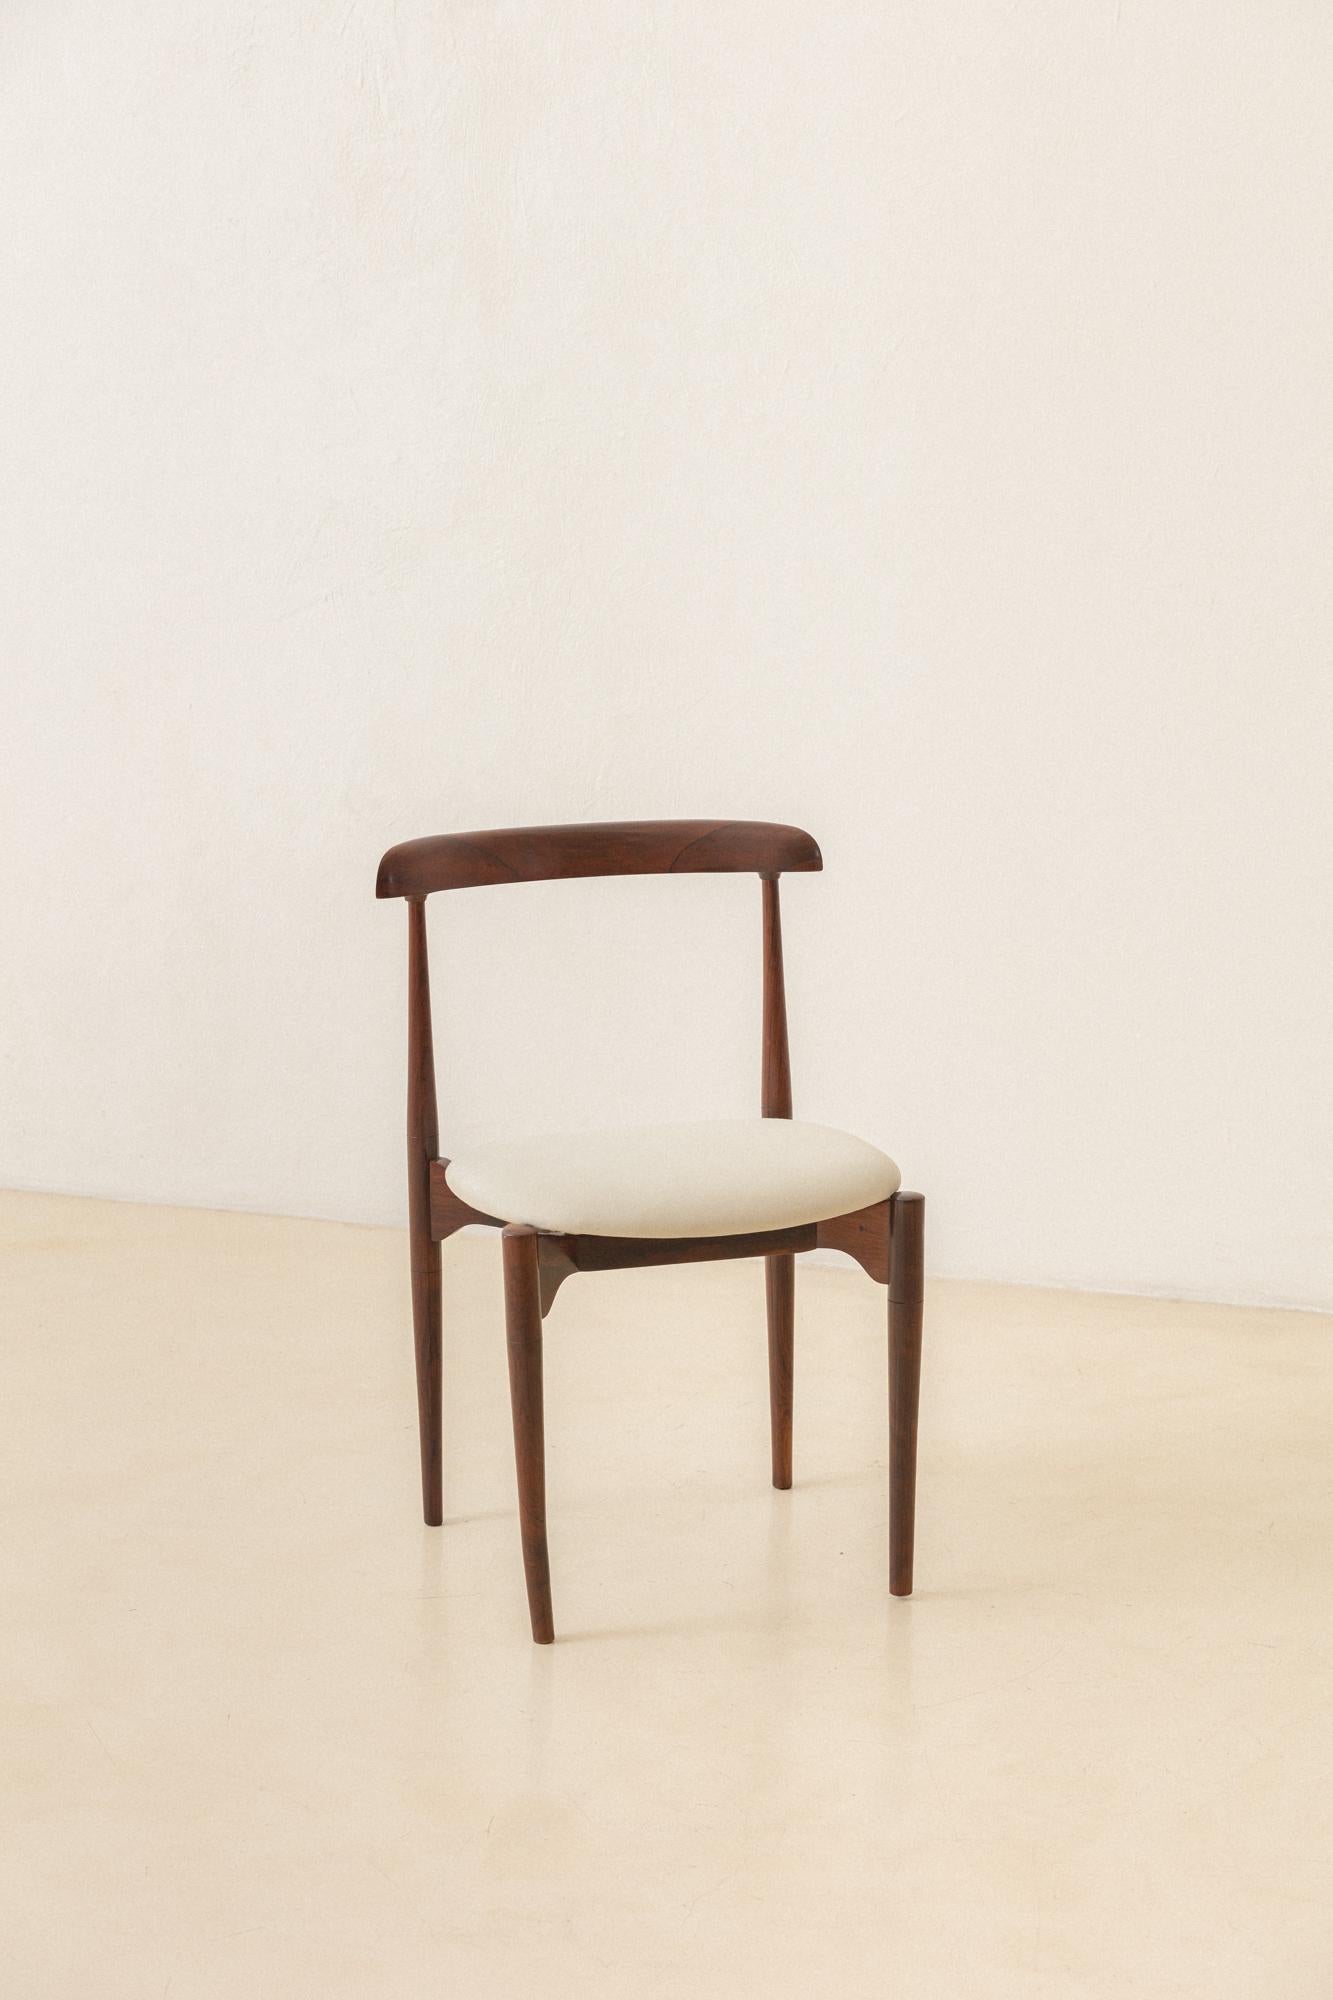 Cette charmante chaise en palissandre massif a été conçue par le designer de meubles d'origine italienne Carlo Benvenuto Fongaro (1915-1986) dans les années 1950.
 
Fongaro a collaboré au développement des premières expériences en matière de